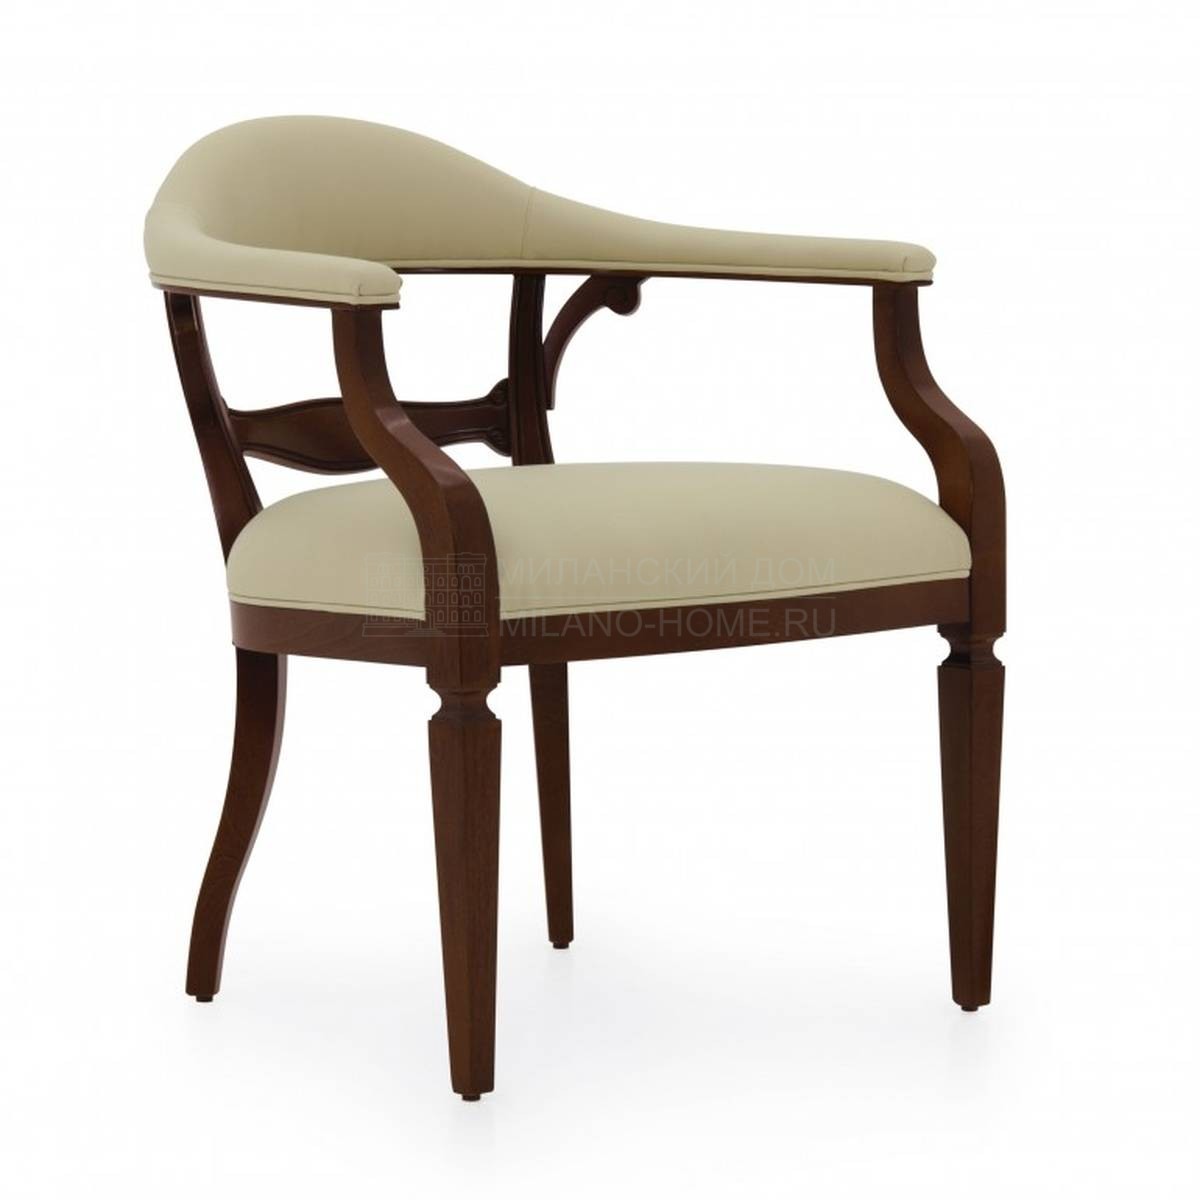 Кресло Taurus armchair из Италии фабрики SEVEN SEDIE